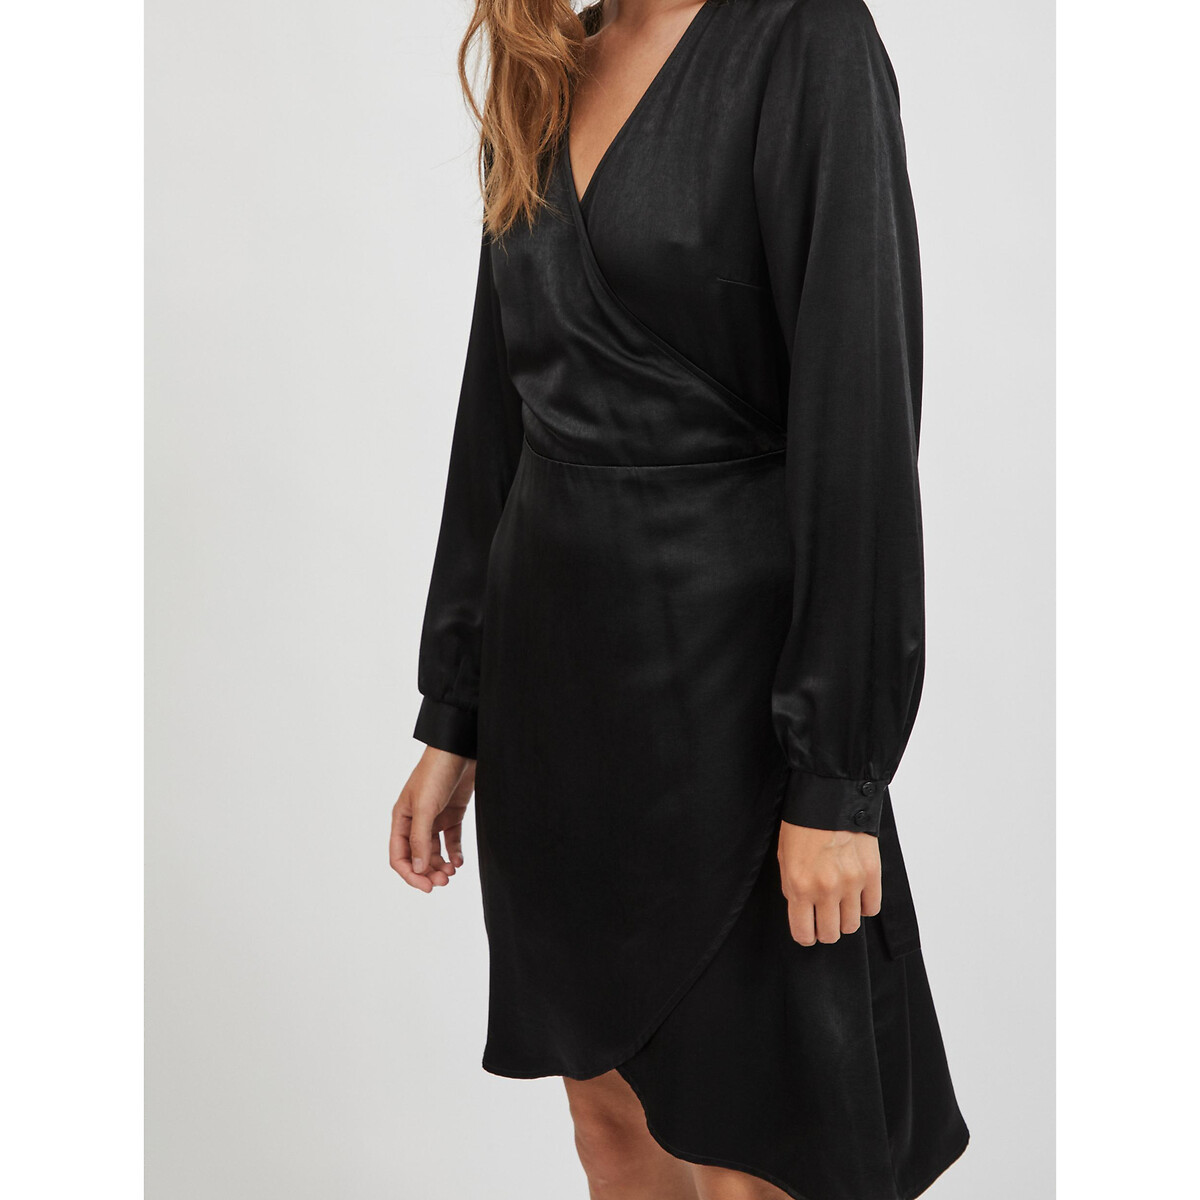 Платье LaRedoute С запахом из сатина 40 черный, размер 40 - фото 4